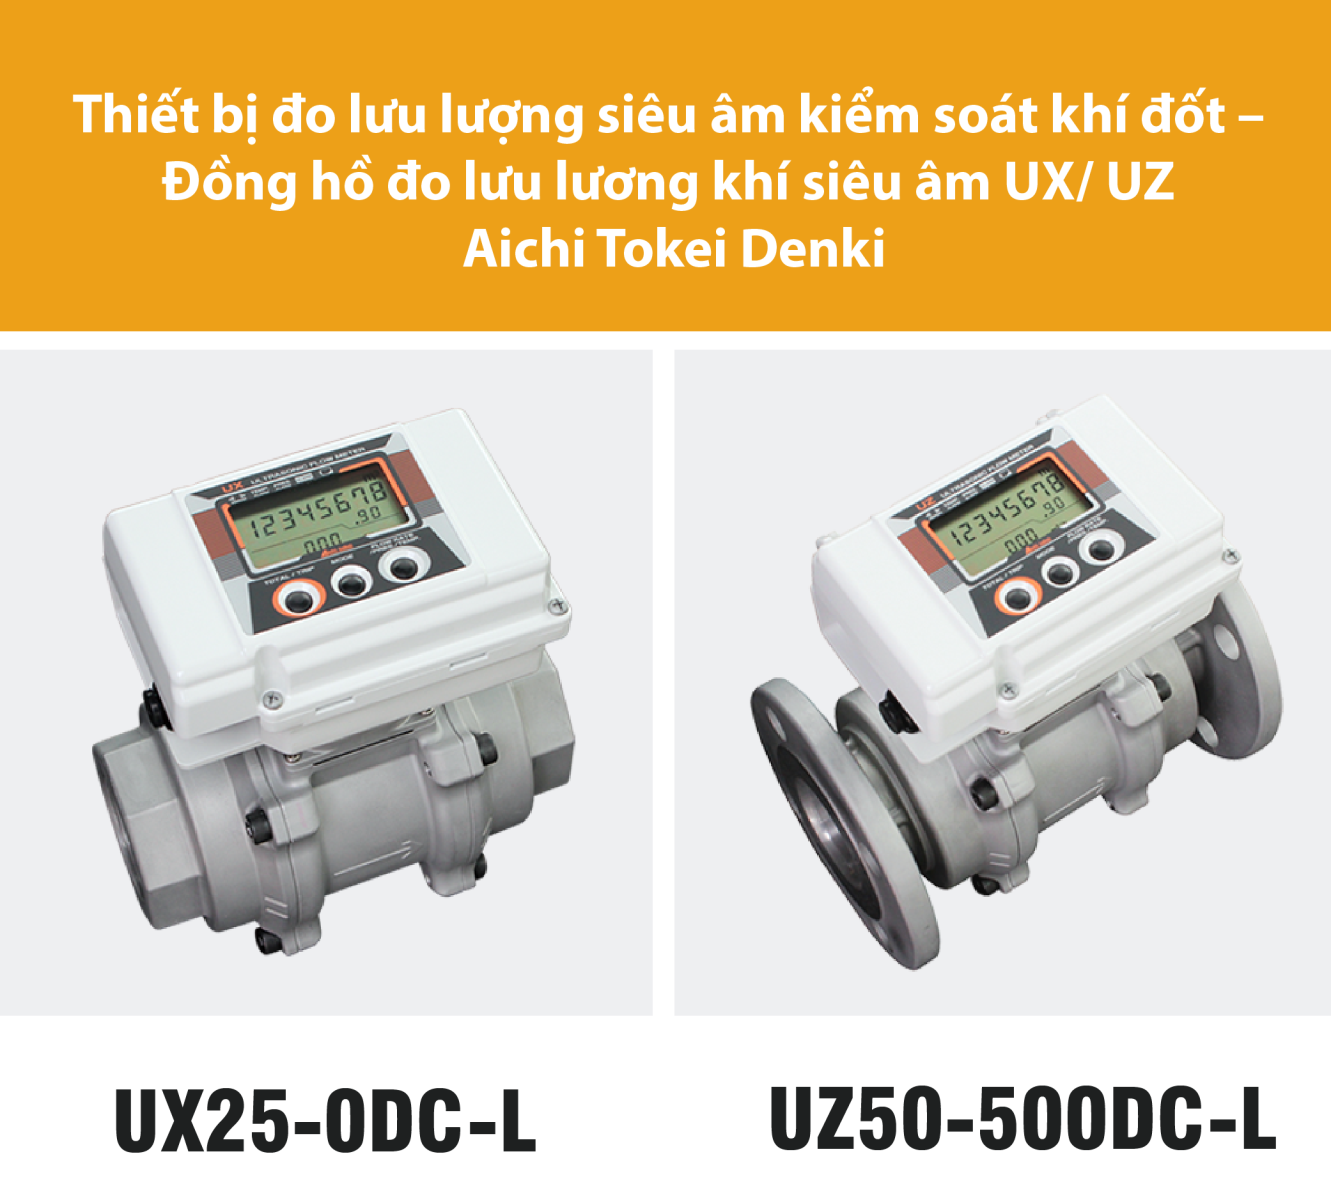 UX25-0DC-L Aichi Tokei Denki, UZ50-500DC-L-PRO Aichi Tokei Denki